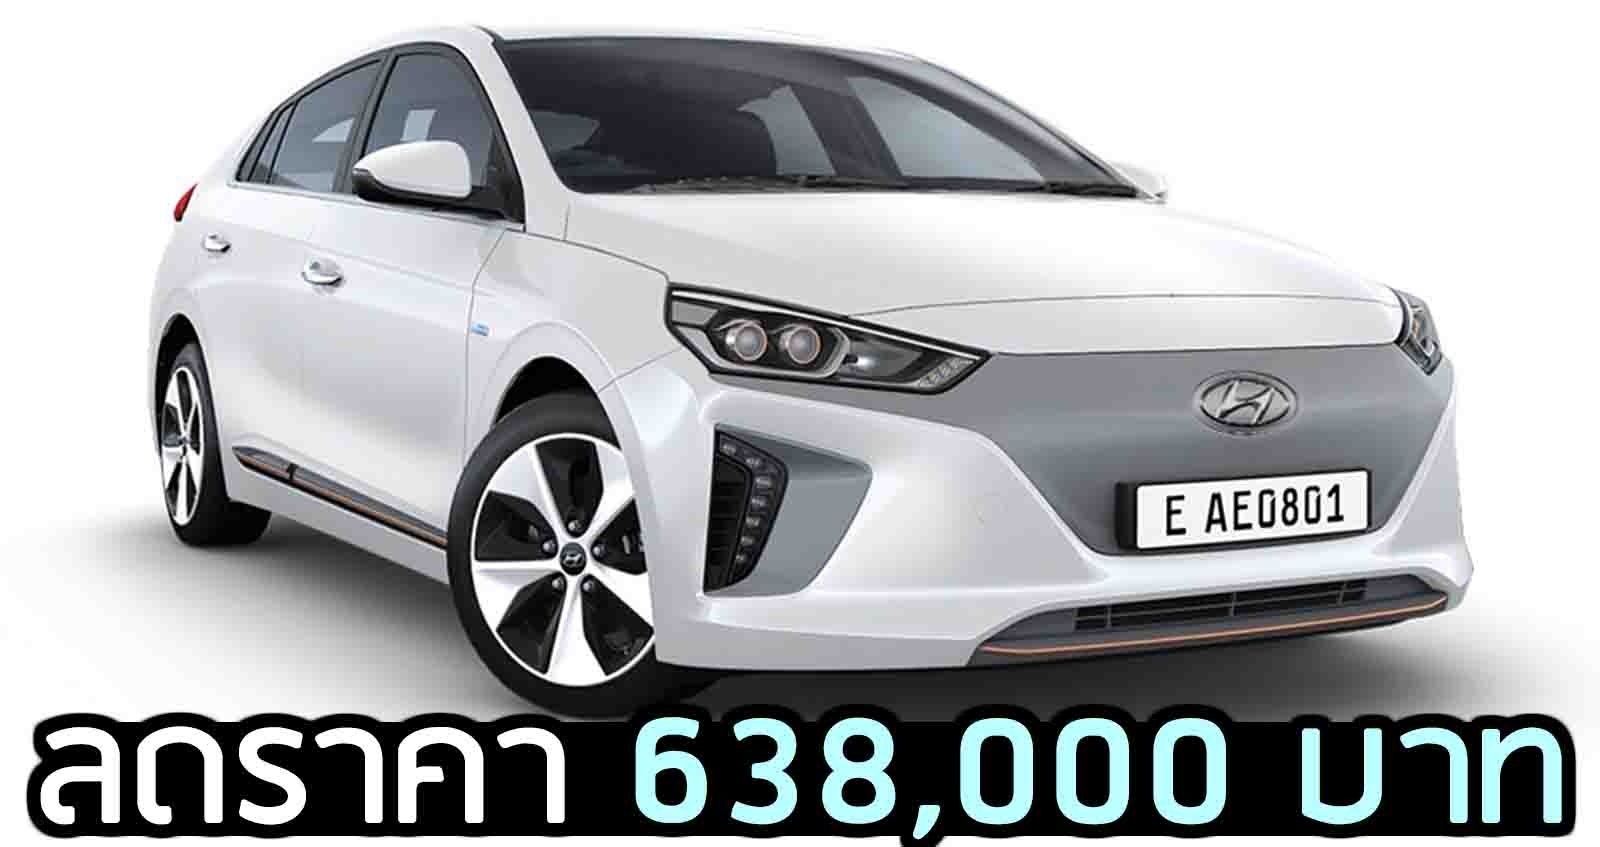 ลดราคา Hyundai IONIQ Electric เหลือ 1,111,000 บาท ส่วนลด 638,000 บาท ในไทย